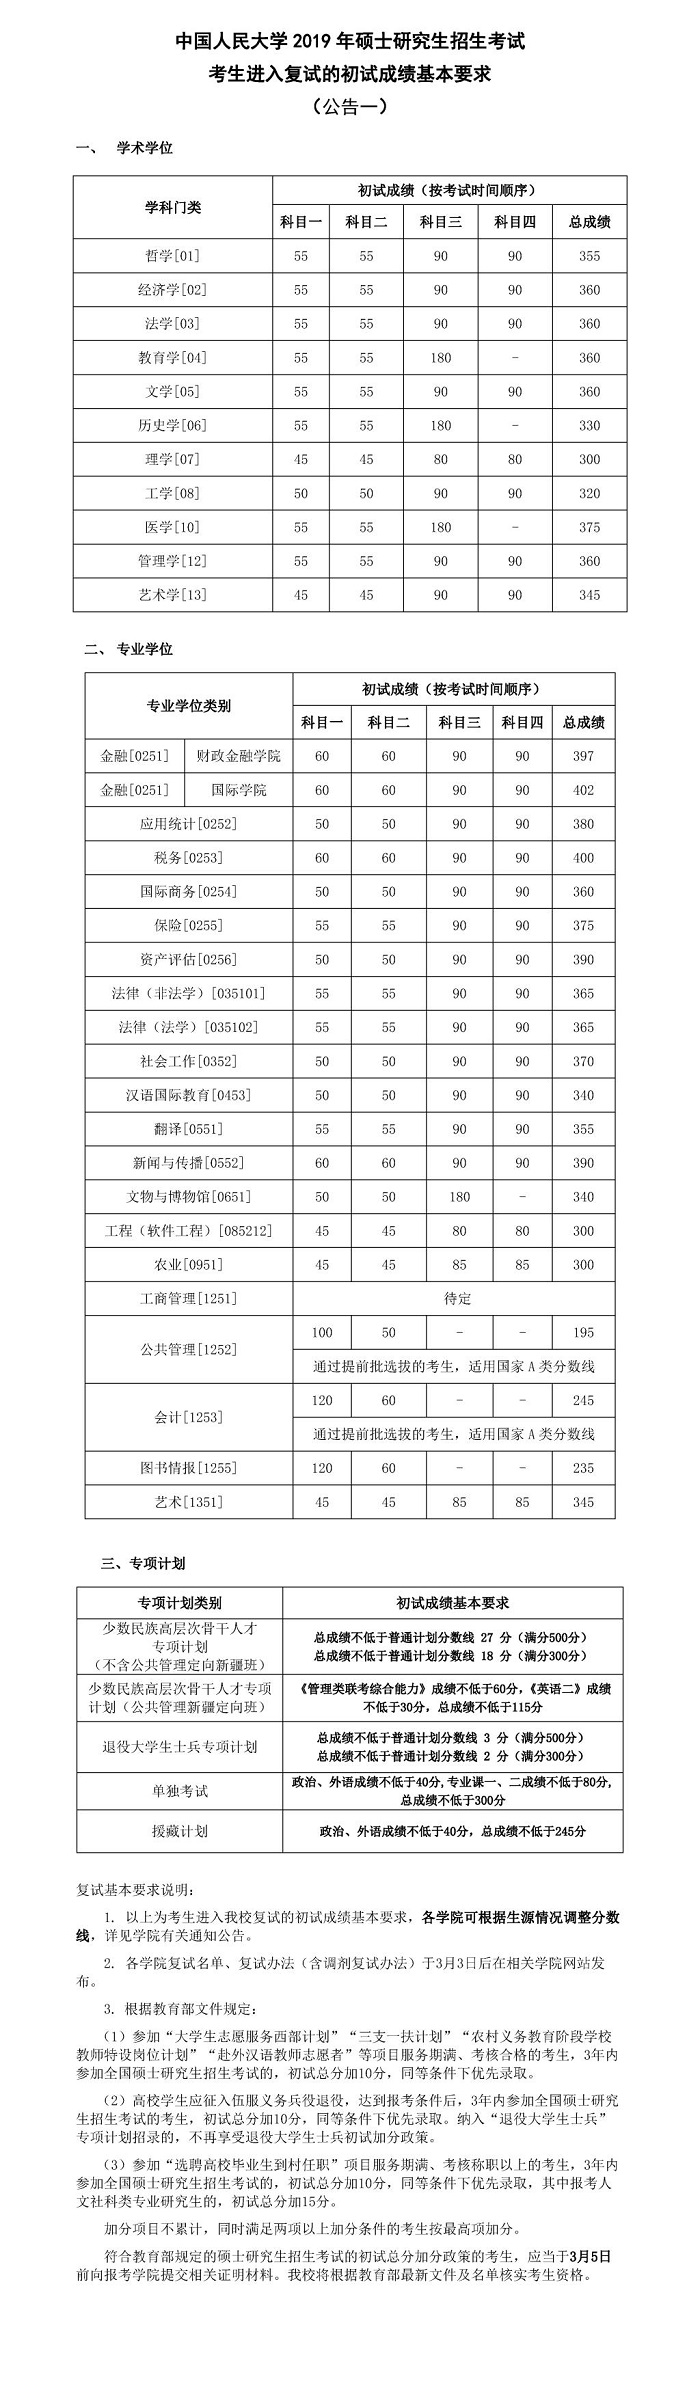 中国人民大学2019年硕士生招生考试进入复试的初试成绩基本要求(公告一)